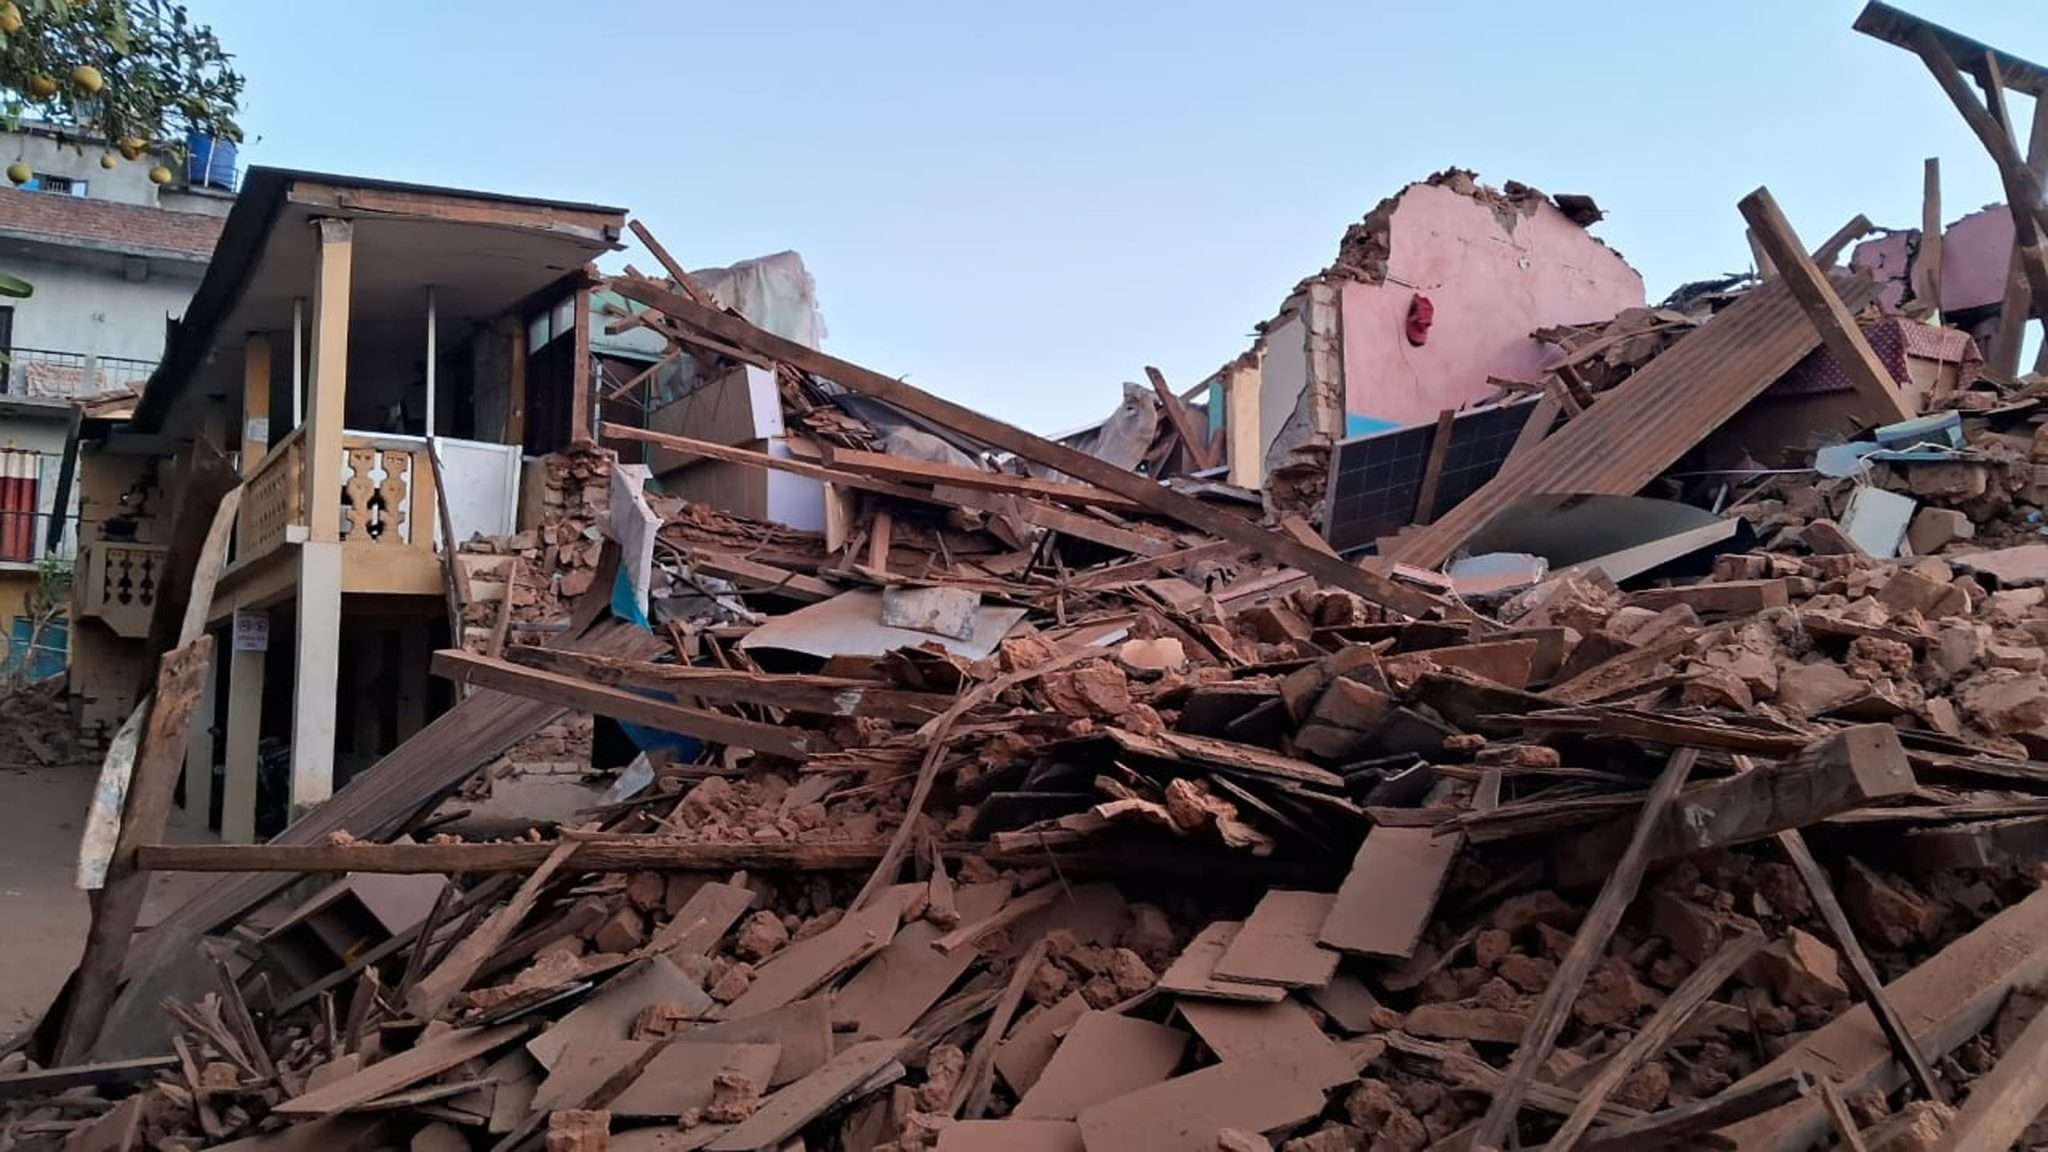 रुकुम र जाजरकोटका पास्टर अगुवाहरु भुकम्प प्रभावित क्षेत्रमा उद्धार र सहयोगमा जुट्दै